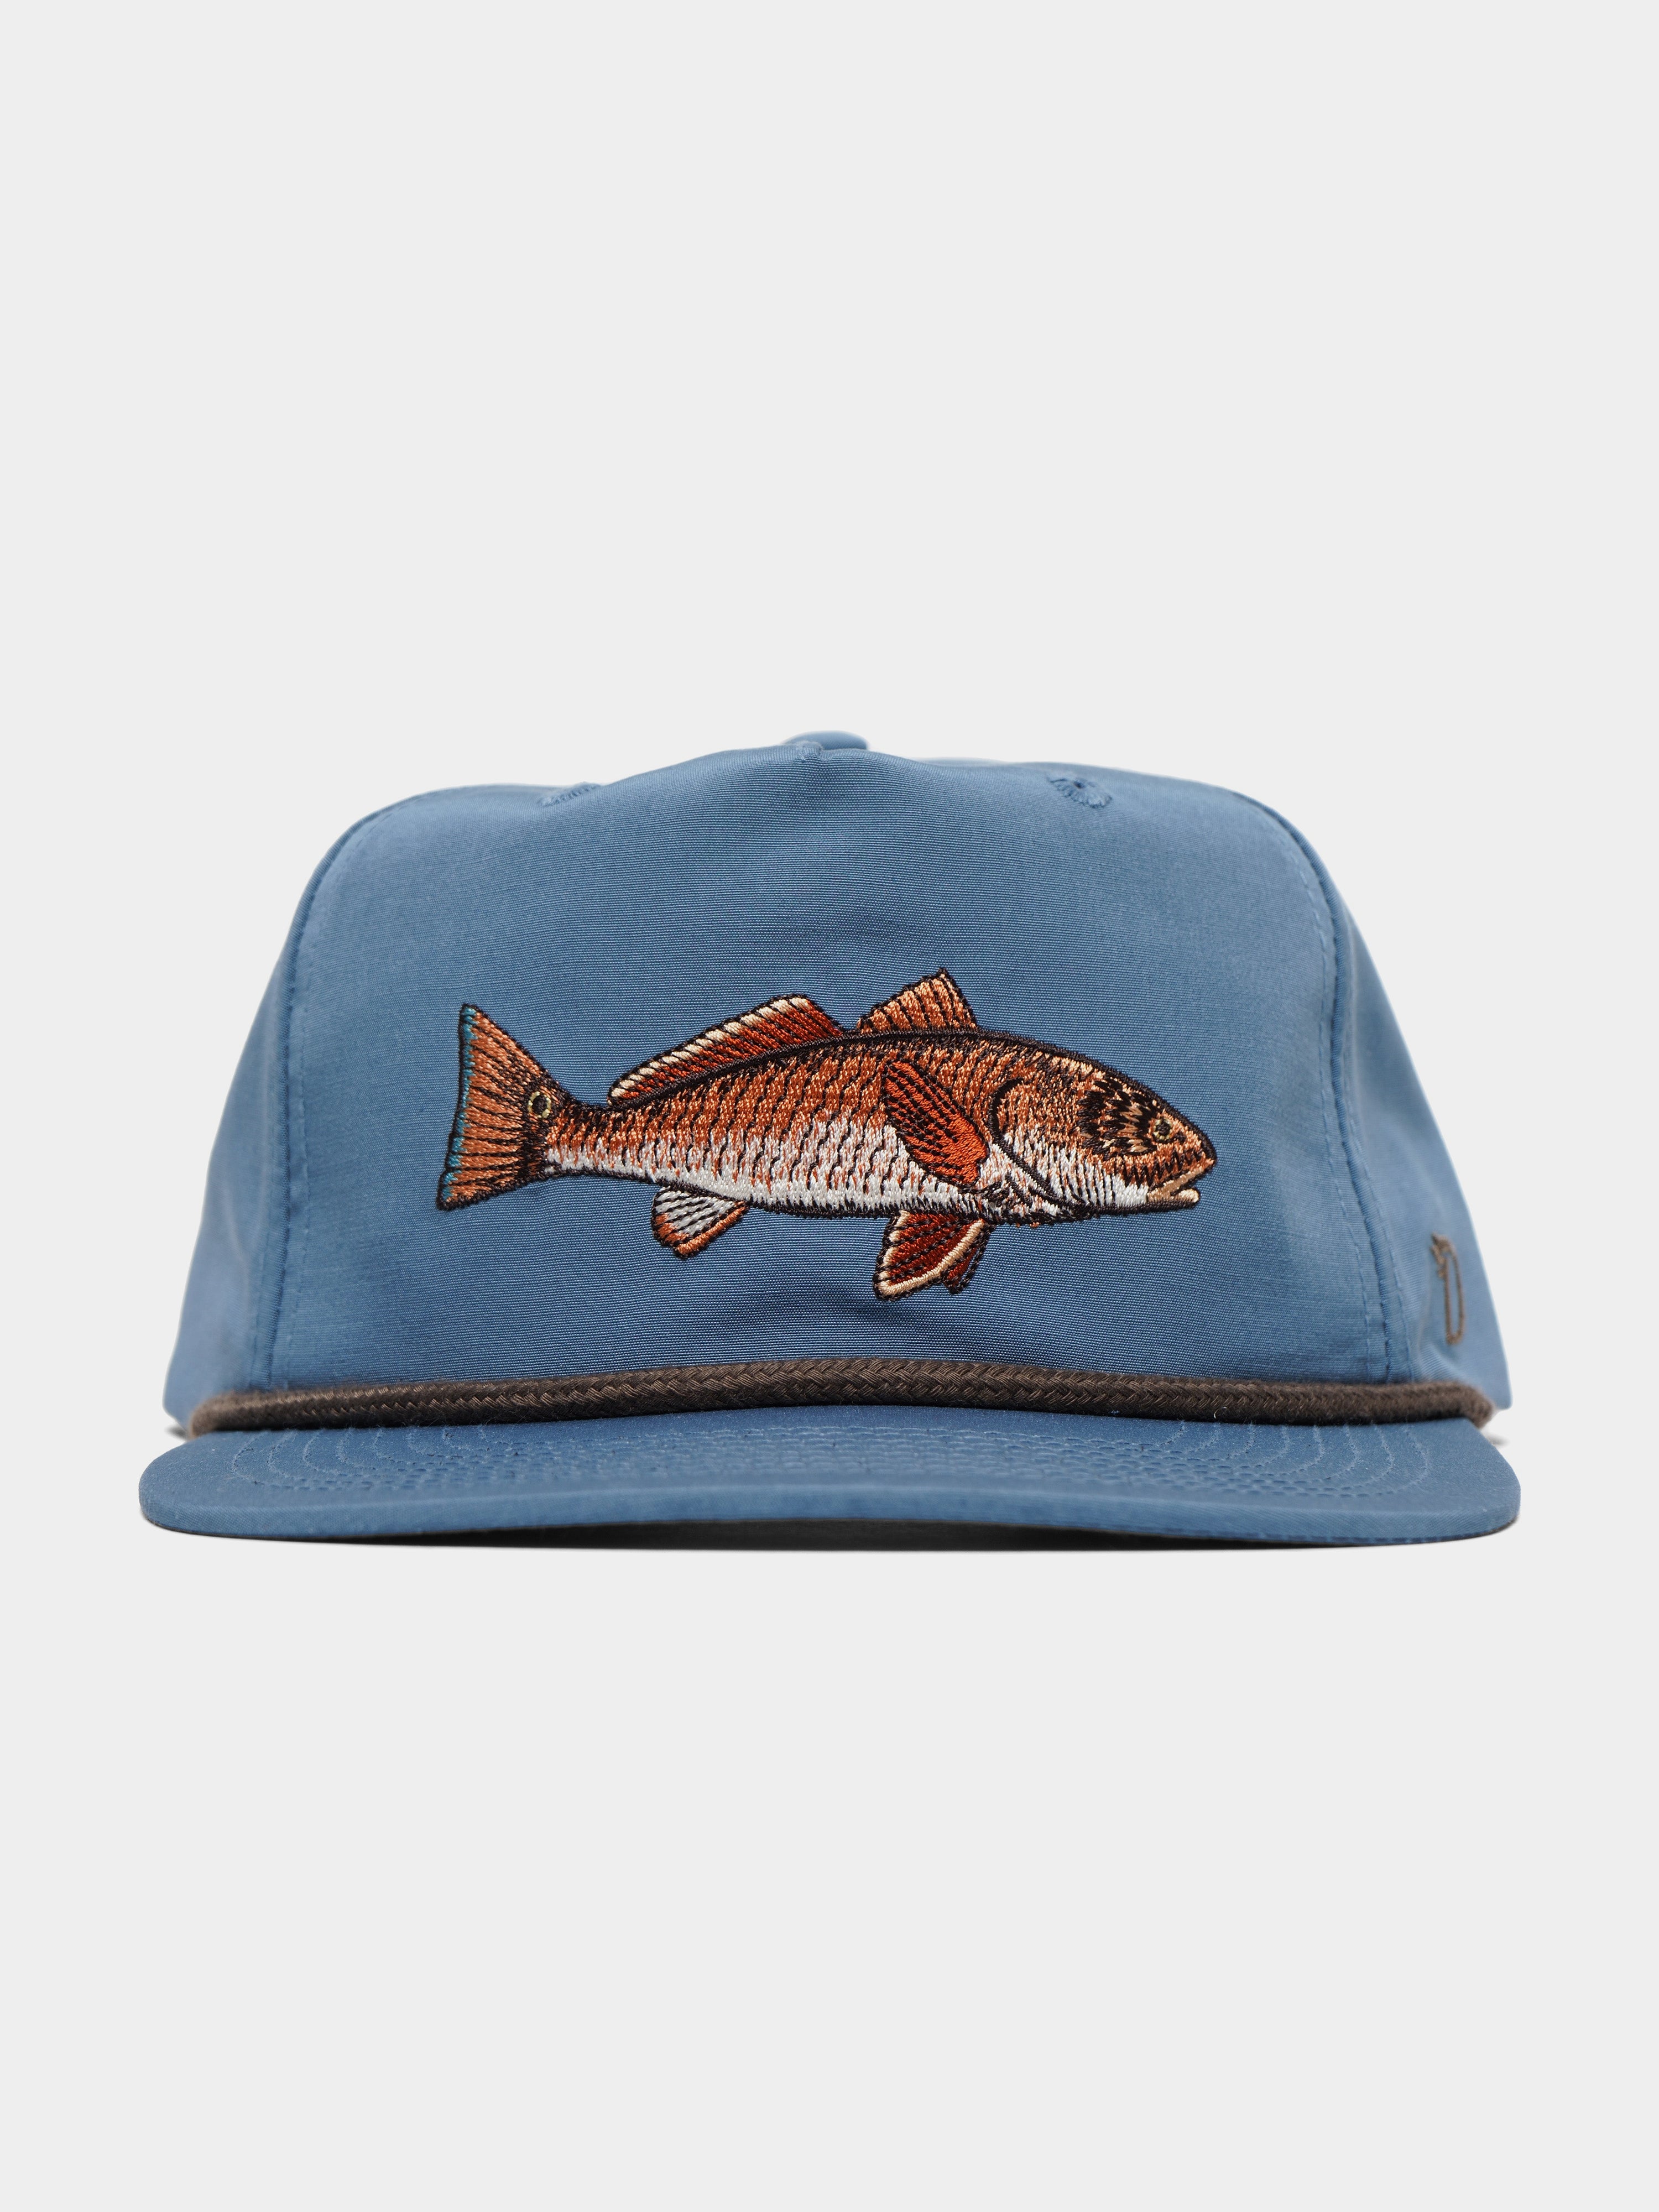 Redfish Fishing Trucker Hat, Fishing Trucker Cap, Red Drum Trucker Hat,  Redfish Fishing Hat, Fishing Hat for Men, Ladies Fishing Trucker Hat 